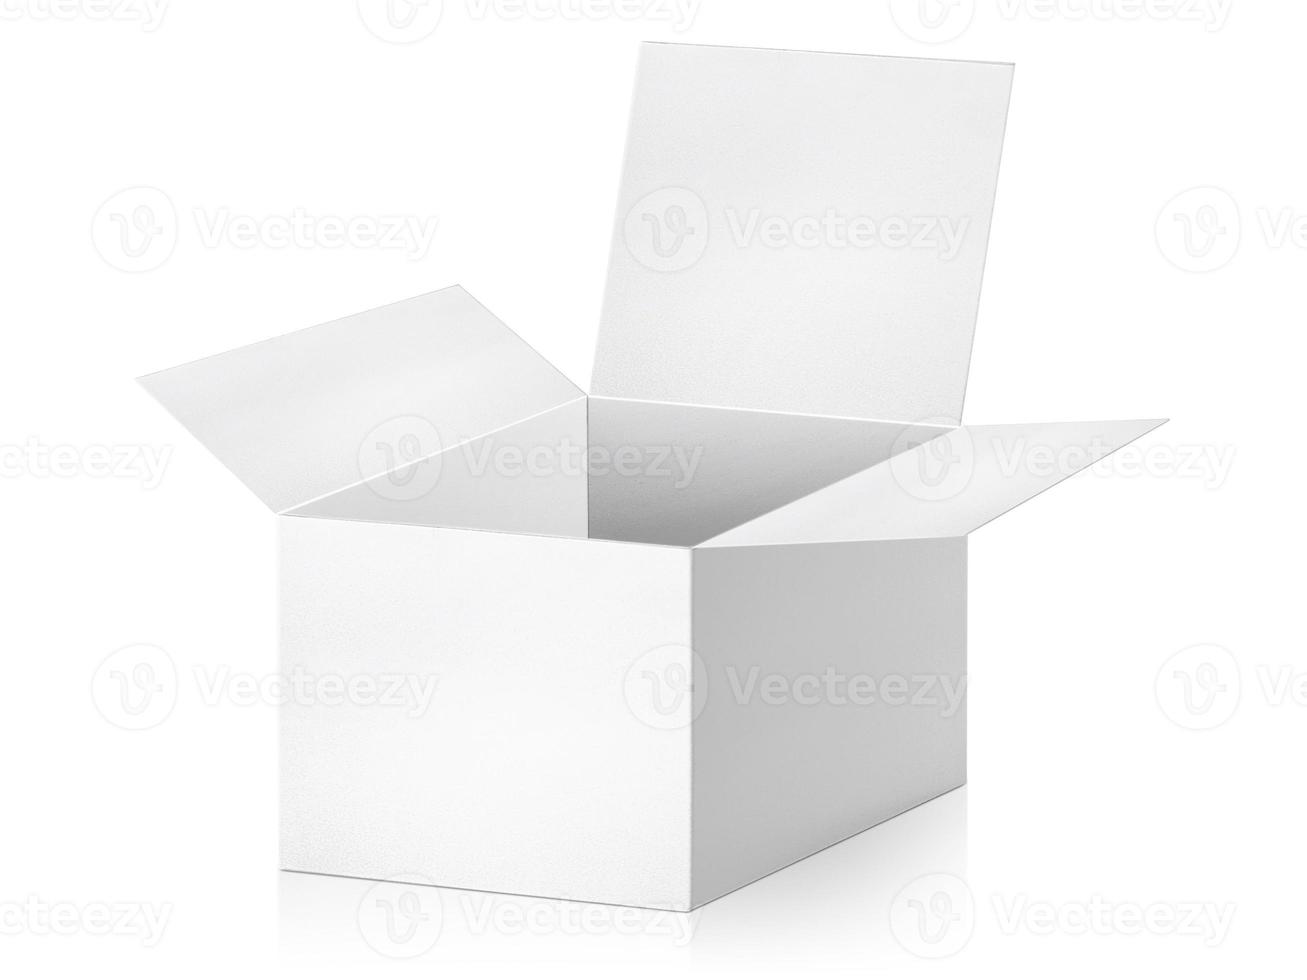 cajas de embalaje en blanco - maqueta abierta, aisladas sobre fondo blanco foto